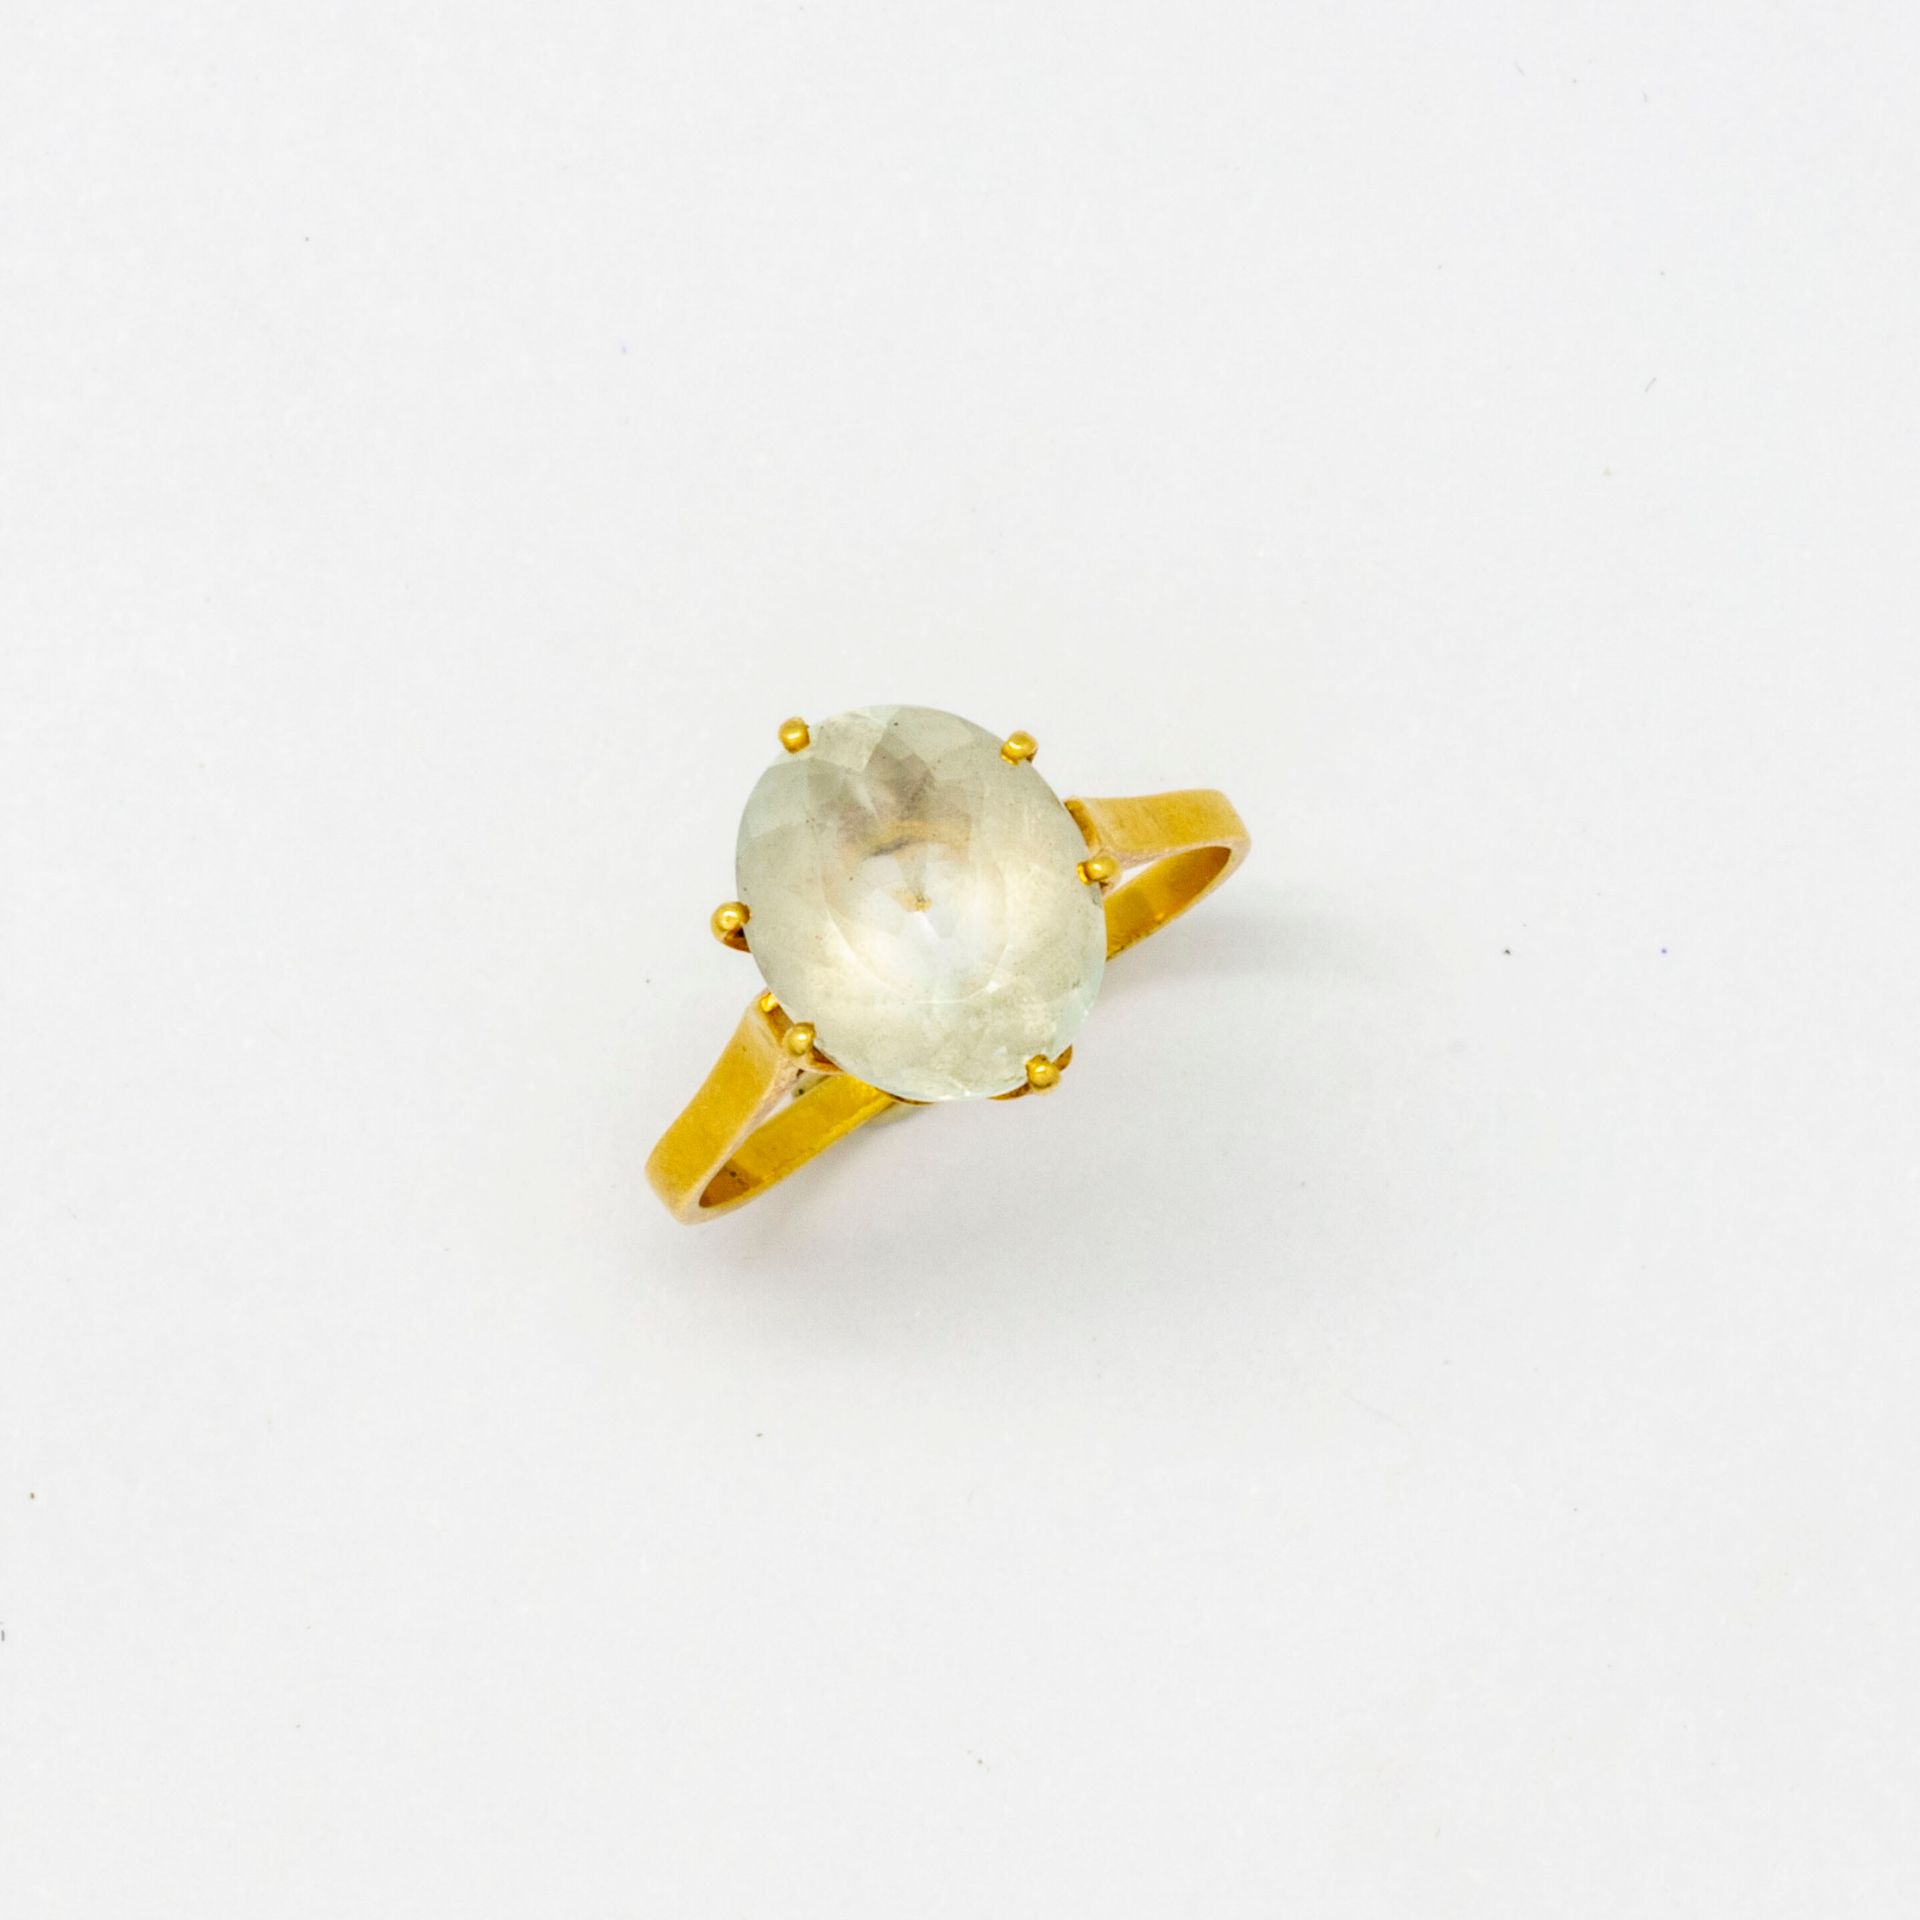 Null Ring aus Gelbgold, verziert mit einem Stein. 

Bruttogewicht: 2,8 g